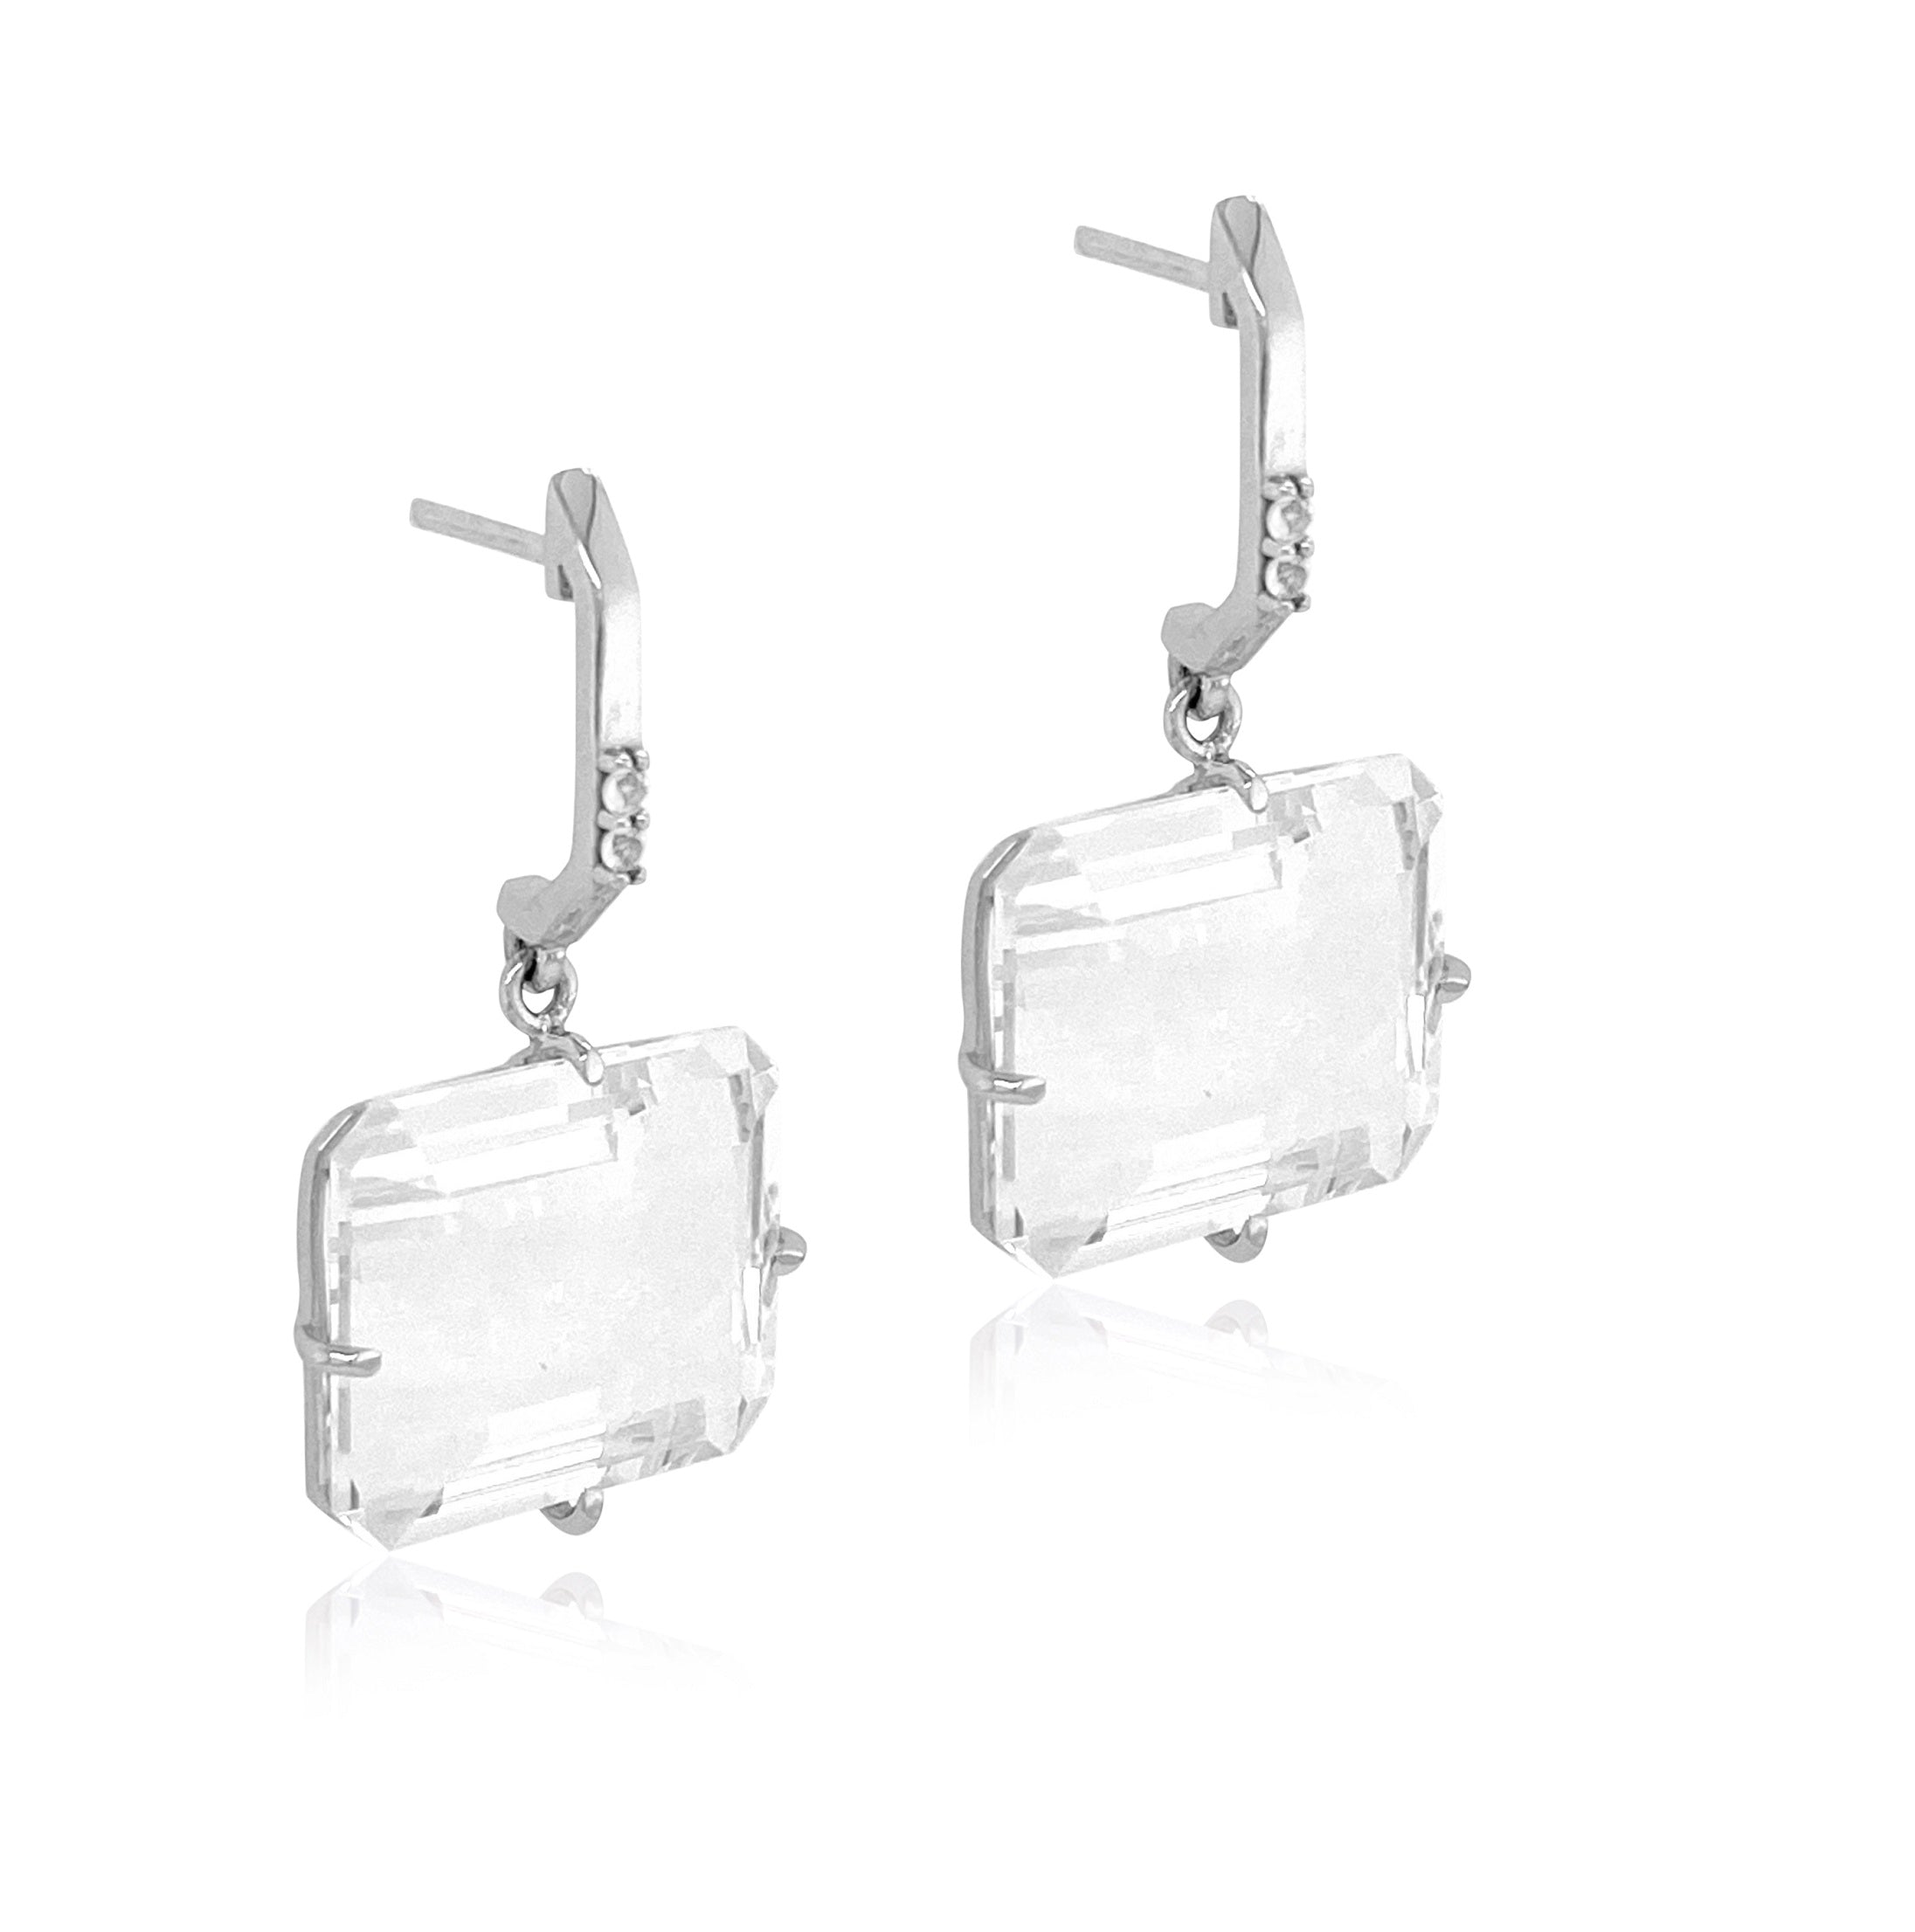 COLUNA Earrings (1156) - Crystal / SS